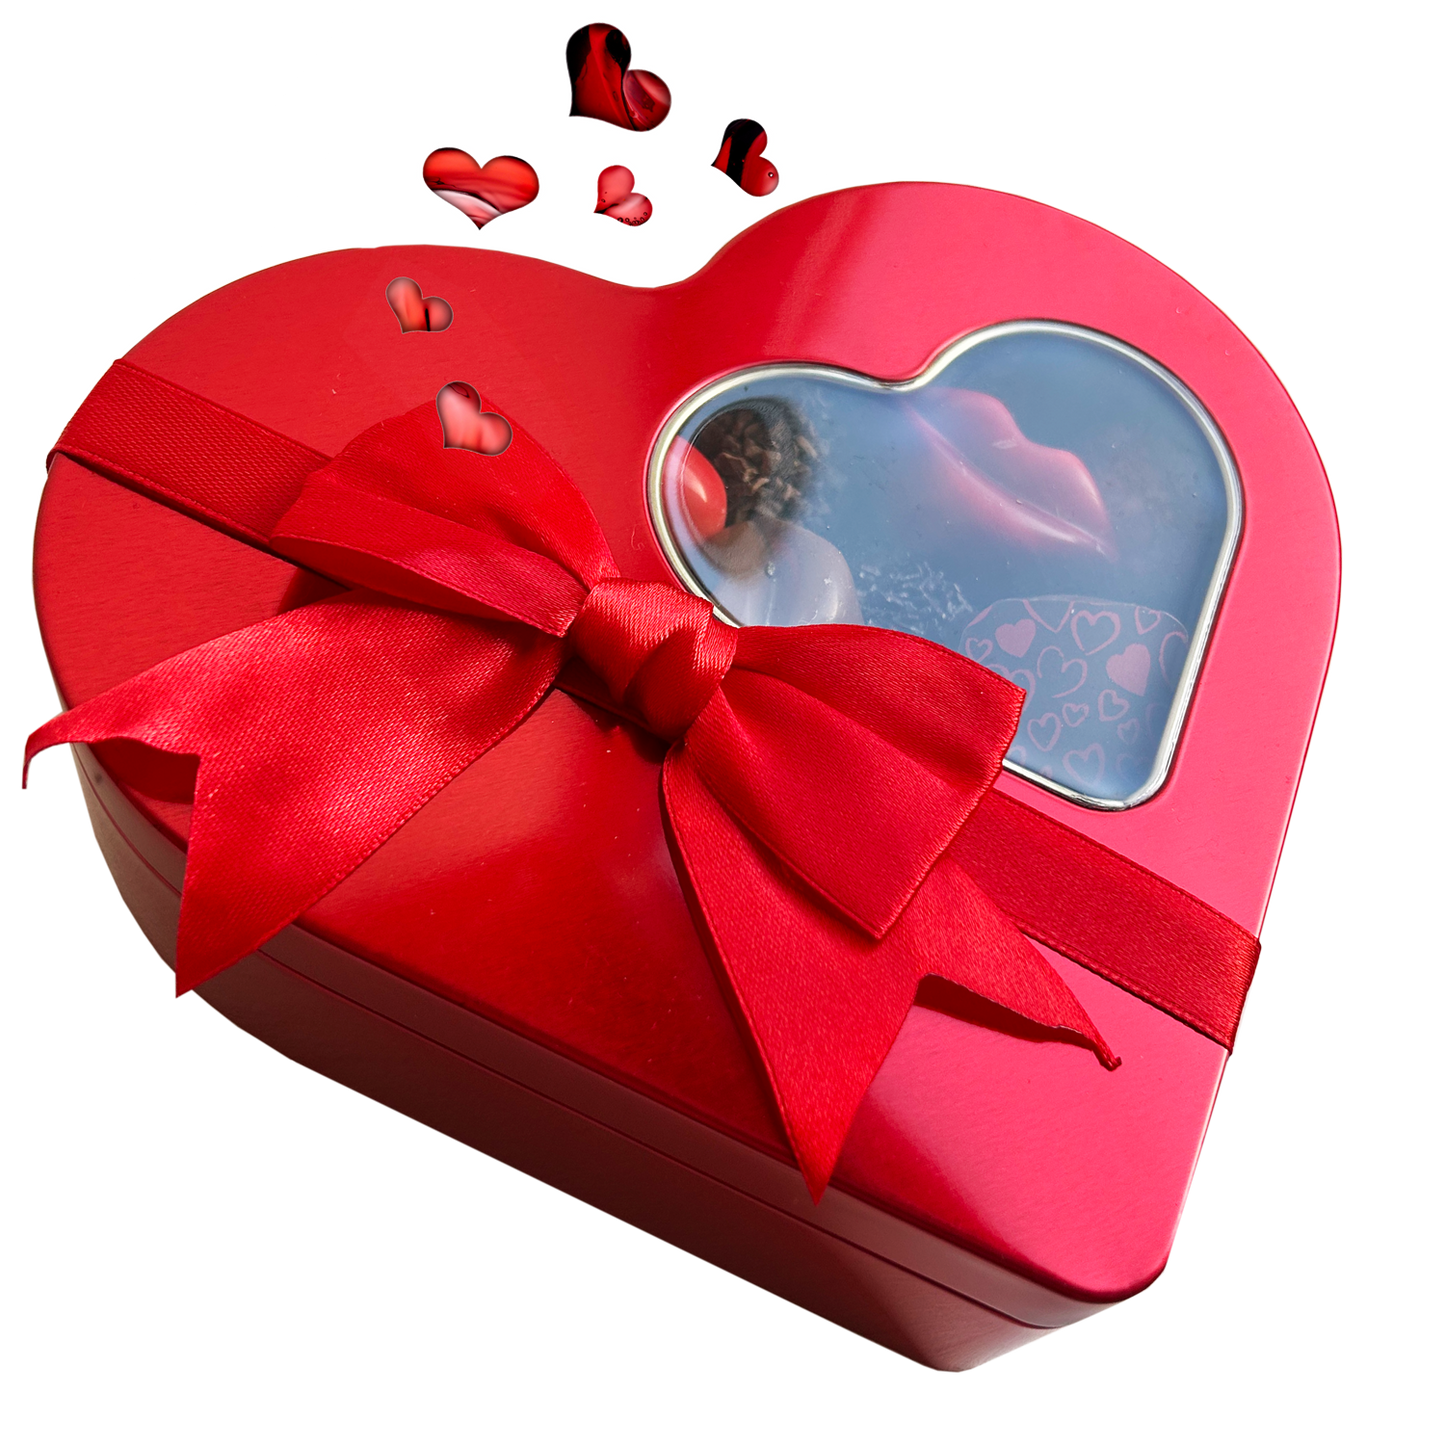 
                  
                    Valentijns Hart- snoepblik liefdevol gevuld met chocolade
                  
                